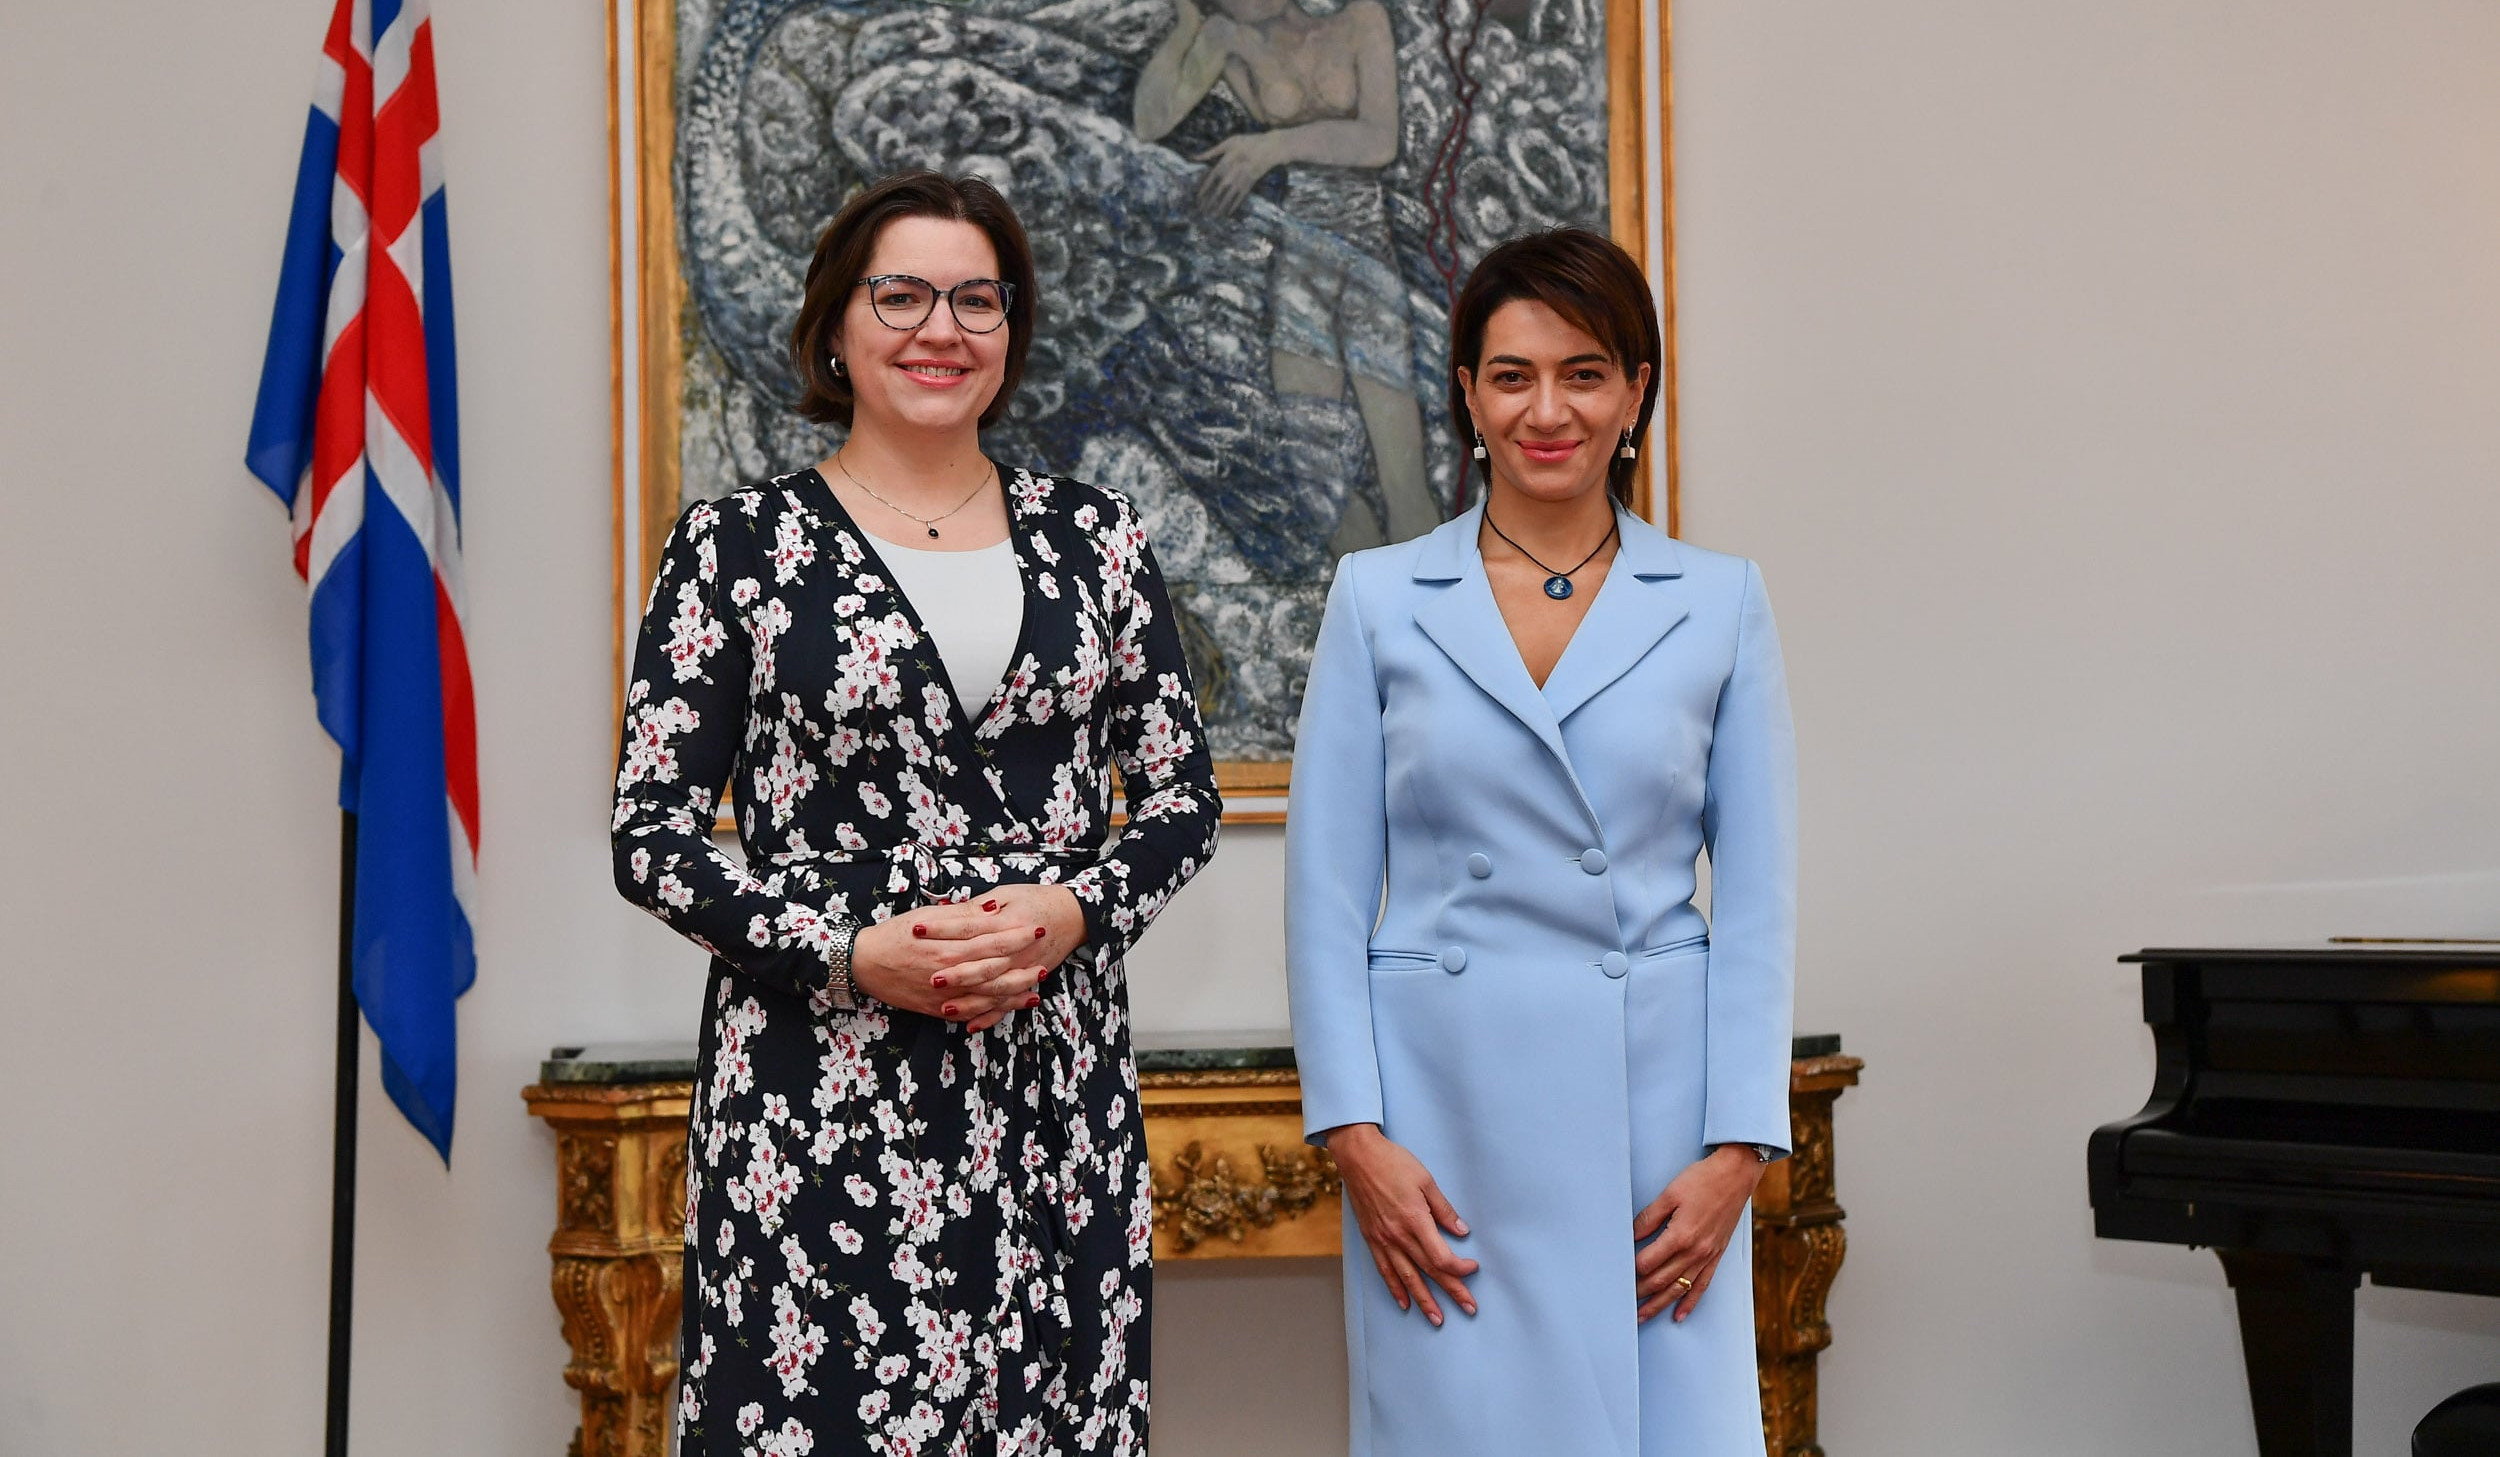 Супруга премьер-министра Армении Анна Акопян в ходе визита в Исландию встретилась с первой леди Исландии Элизой Рейд